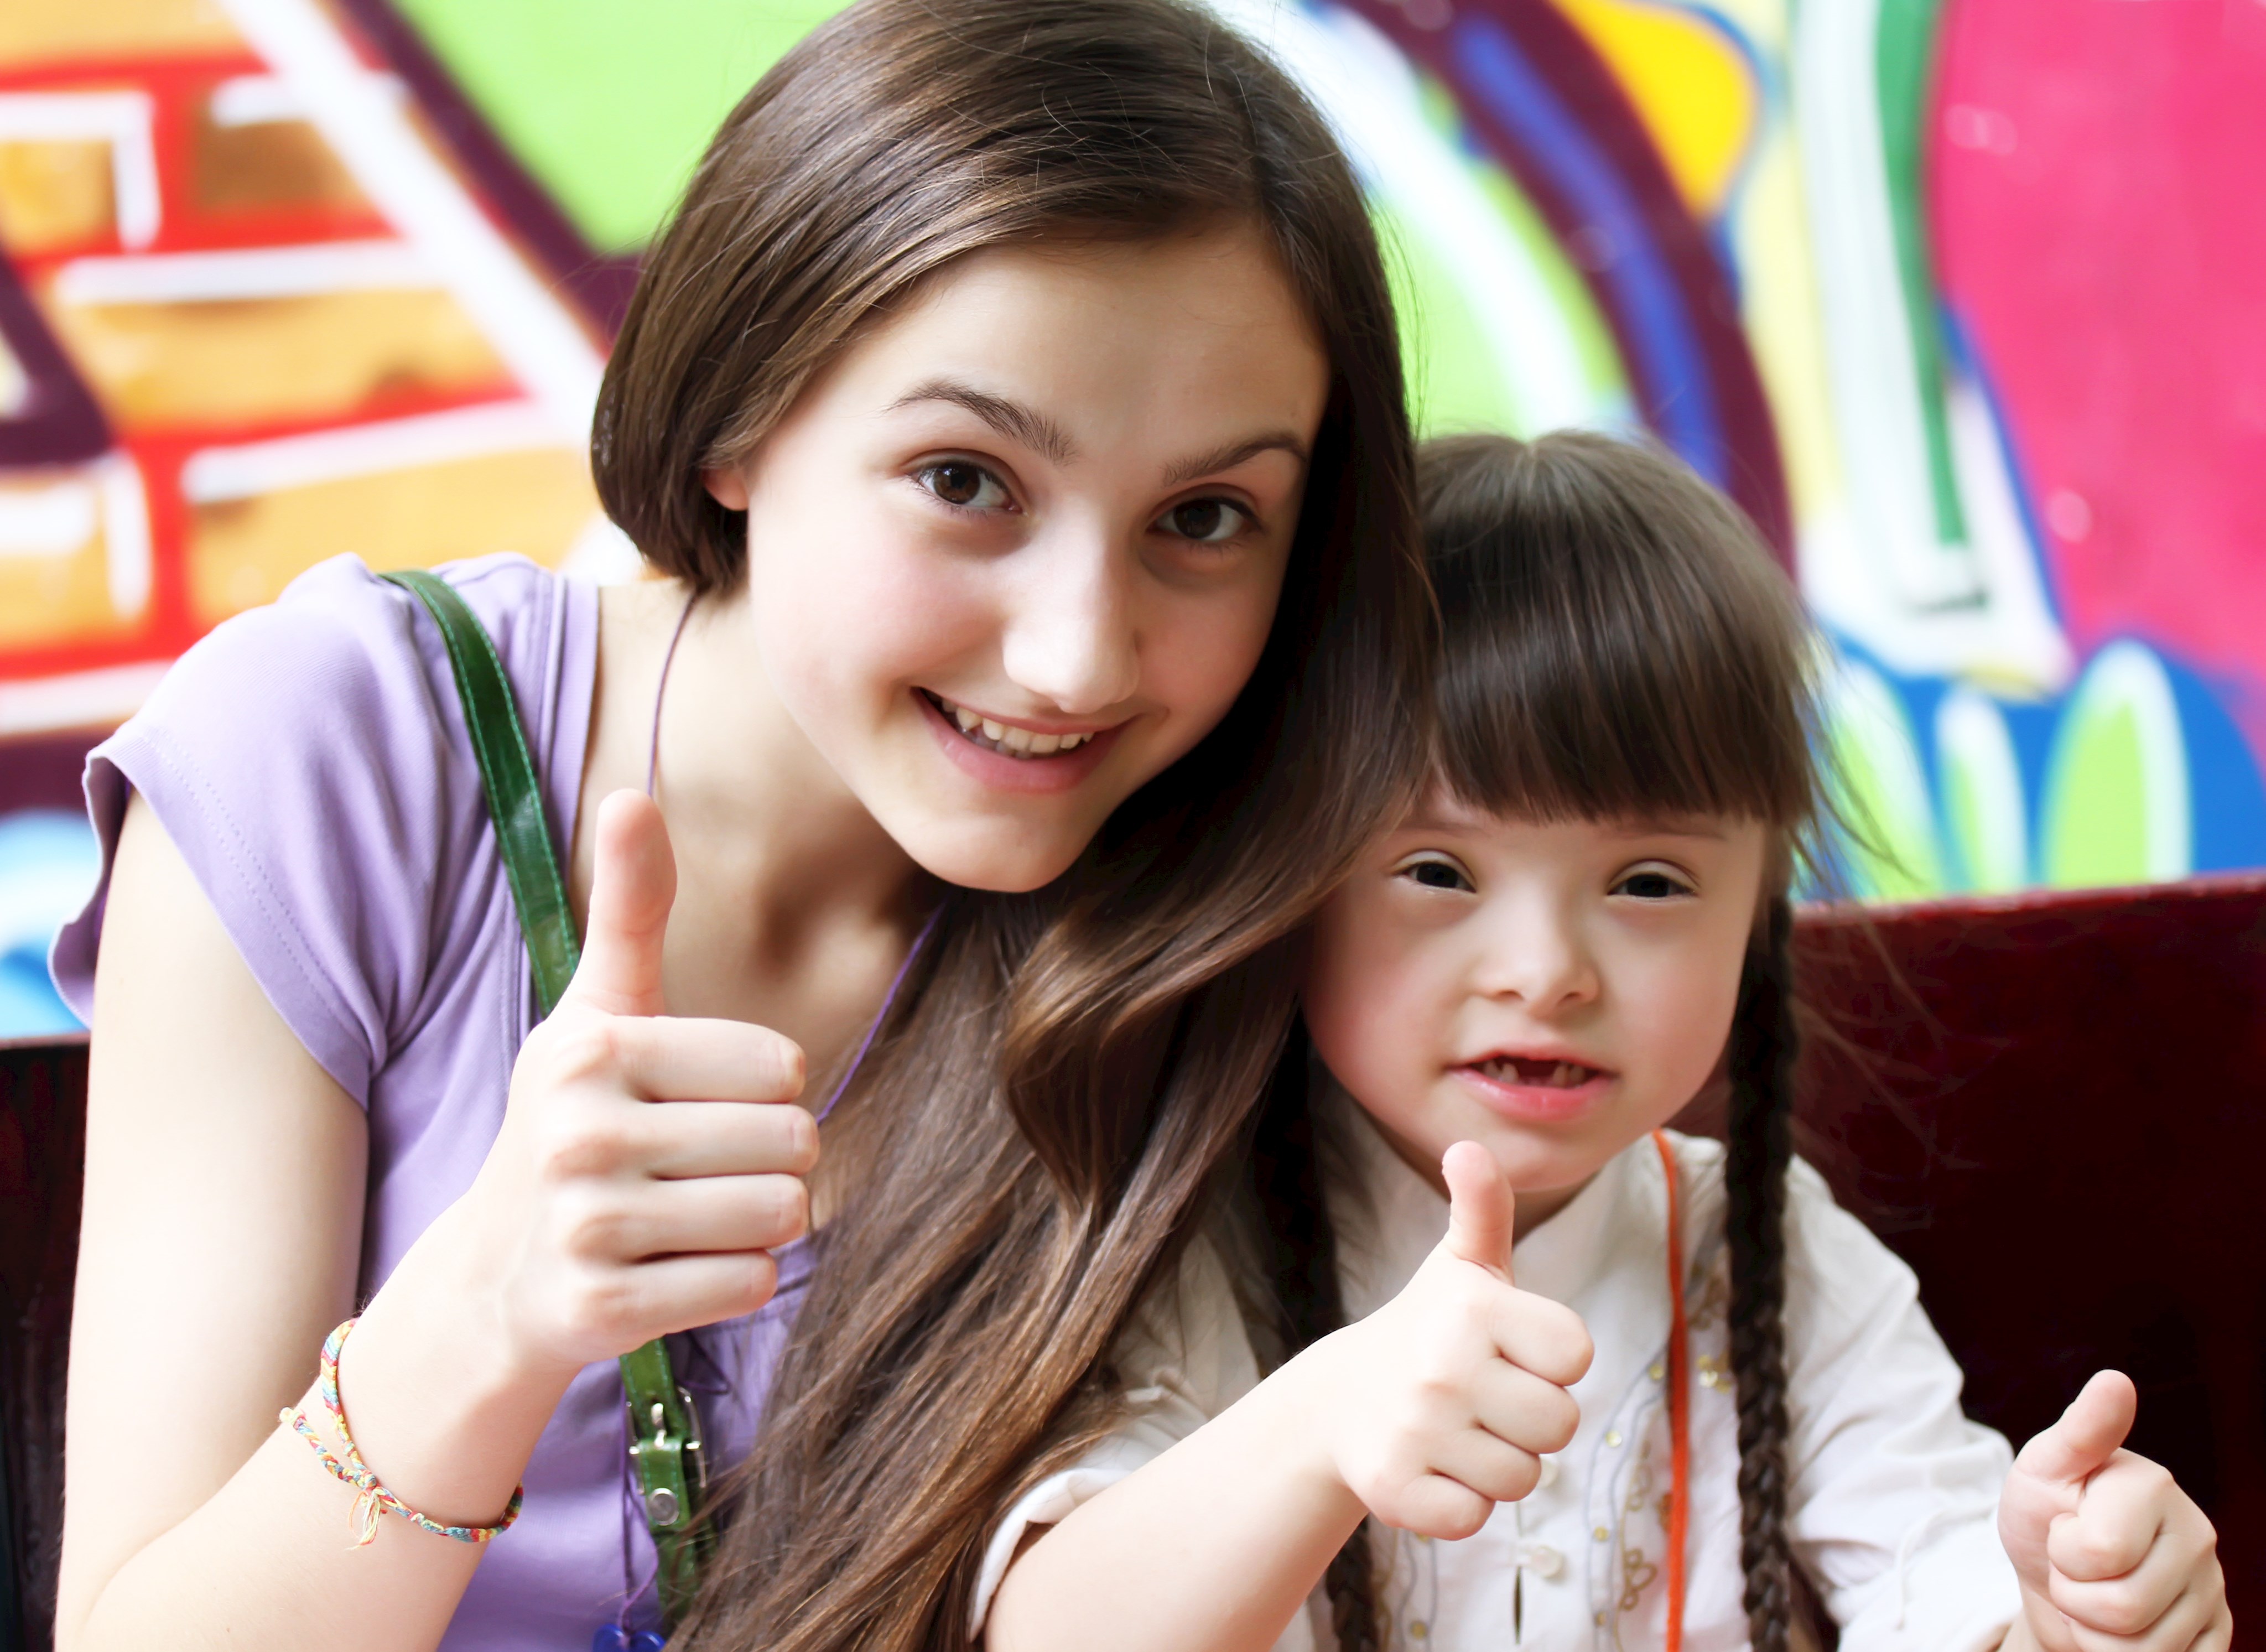 Das neue Angebot „GeschwisterCLUB“ stellt Geschwister von Kindern mit chronischer Erkrankung oder Behinderung in den Fokus. Foto: Depositphotos/ Denys Kuvaiev (KJF)